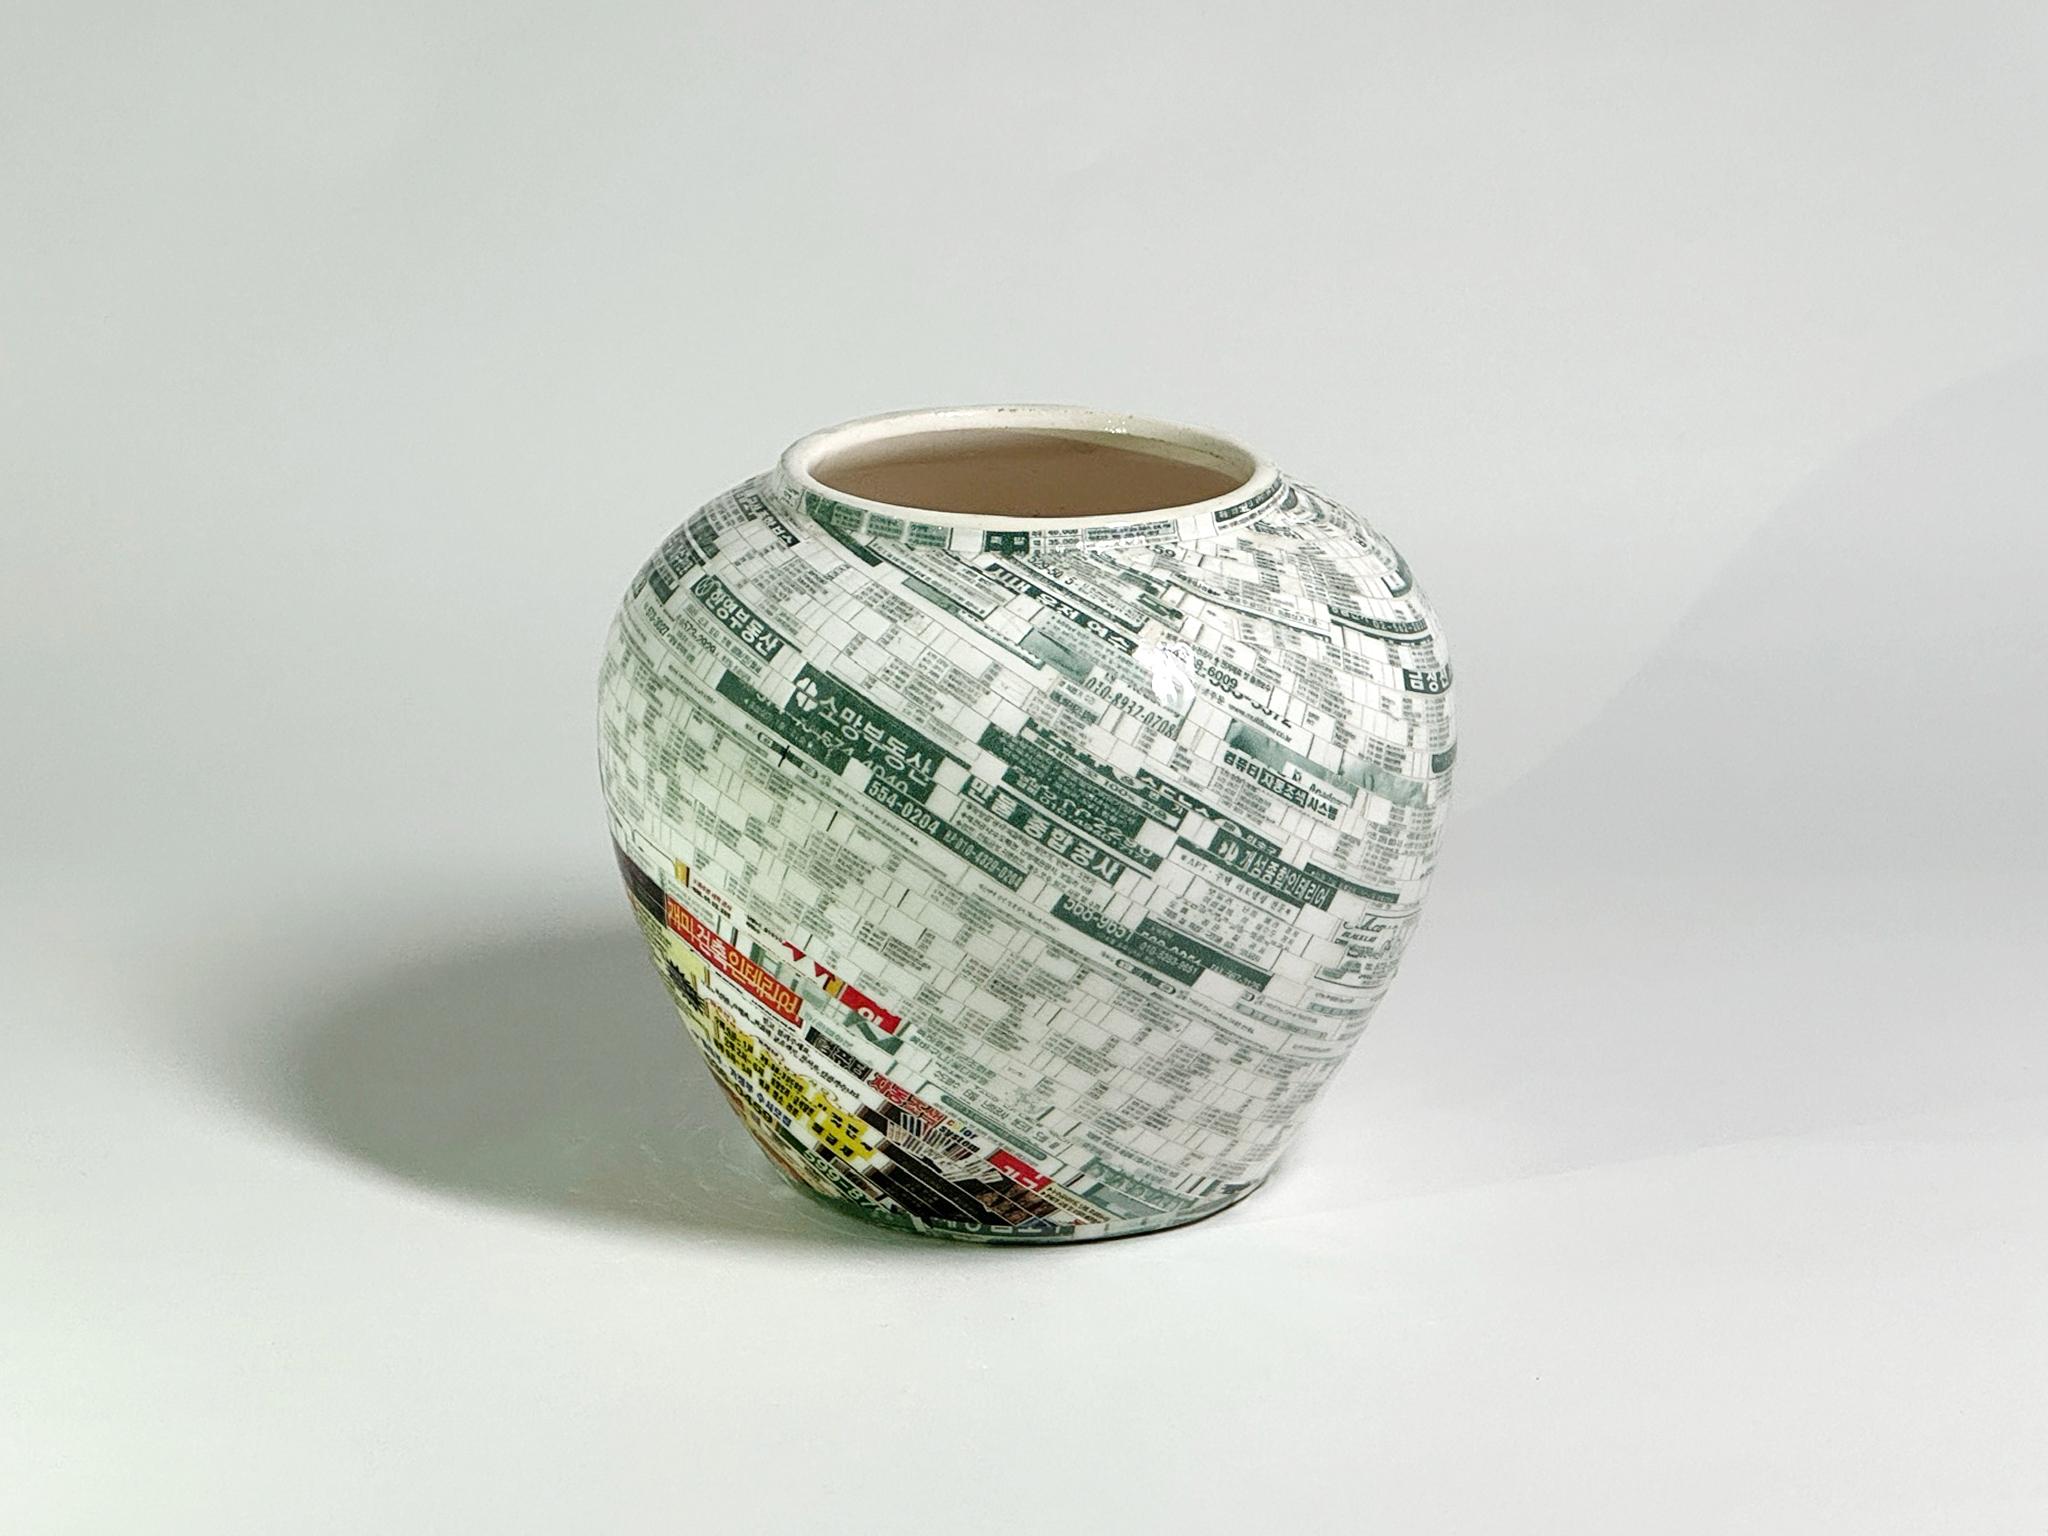 Vase Jjirasi n°05, 2021 par Yongwon Noh
Extrait de la série Jjirasi 
Céramique, PVC autocollant et résine
Taille : 3.9 in. H x 4.7 in. L x 4,7 in. D
Poids : 3kg sans emballage
Pièce unique
Signature inscrite sur le fond du vase

Jjirasi Vase explore